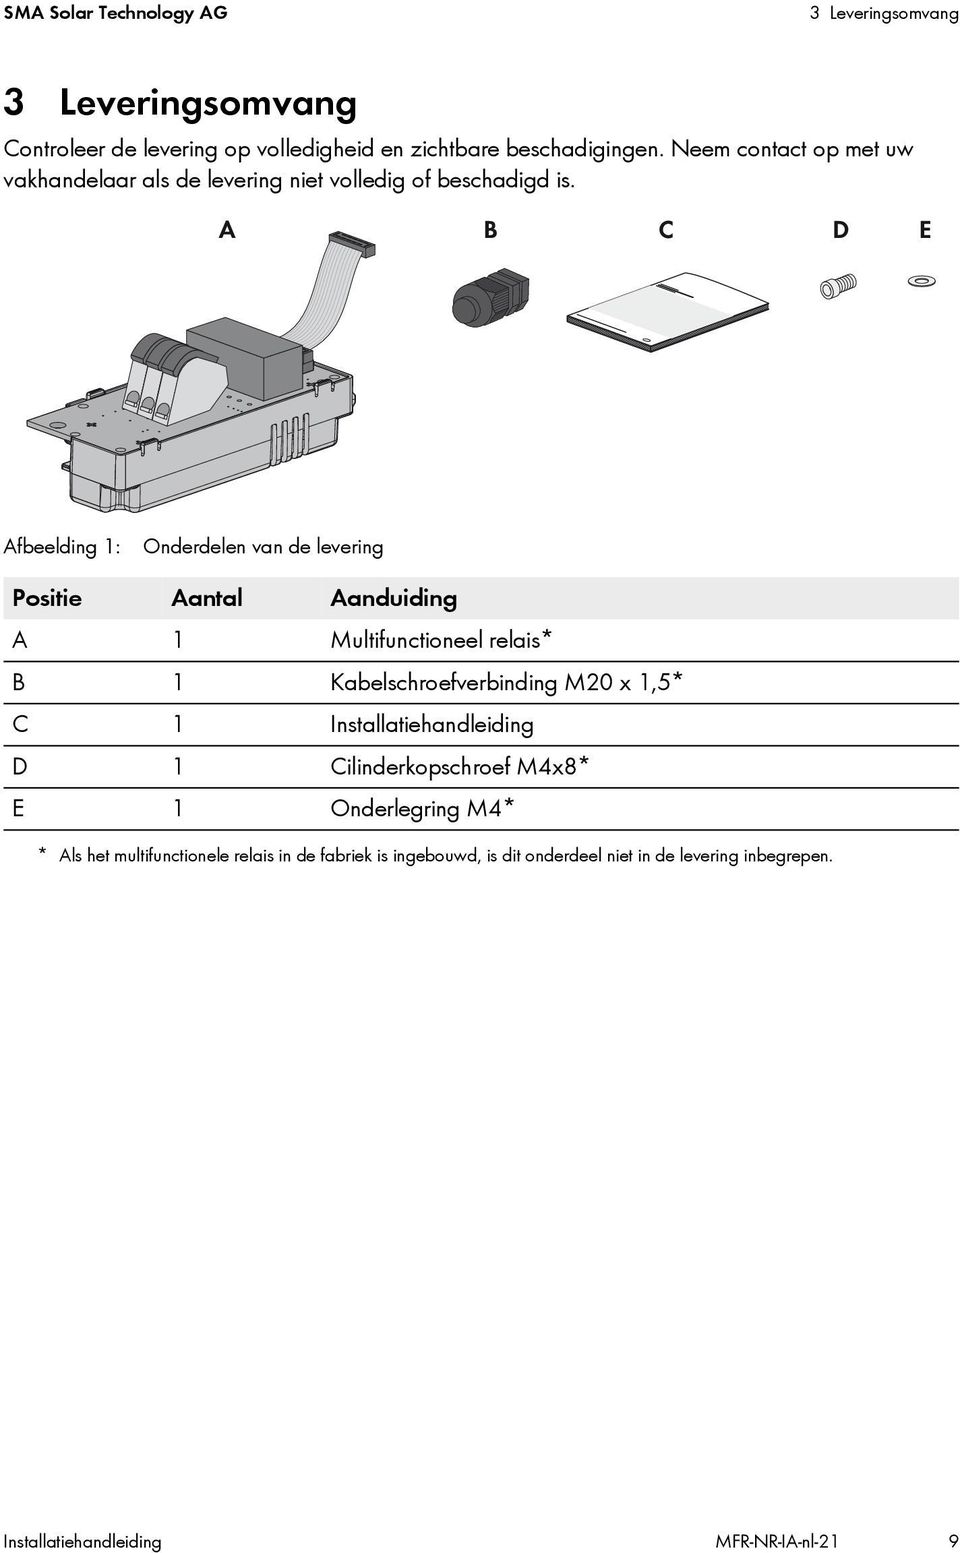 Afbeelding 1: Onderdelen van de levering Positie Aantal Aanduiding A 1 Multifunctioneel relais* B 1 Kabelschroefverbinding M20 x 1,5* C 1